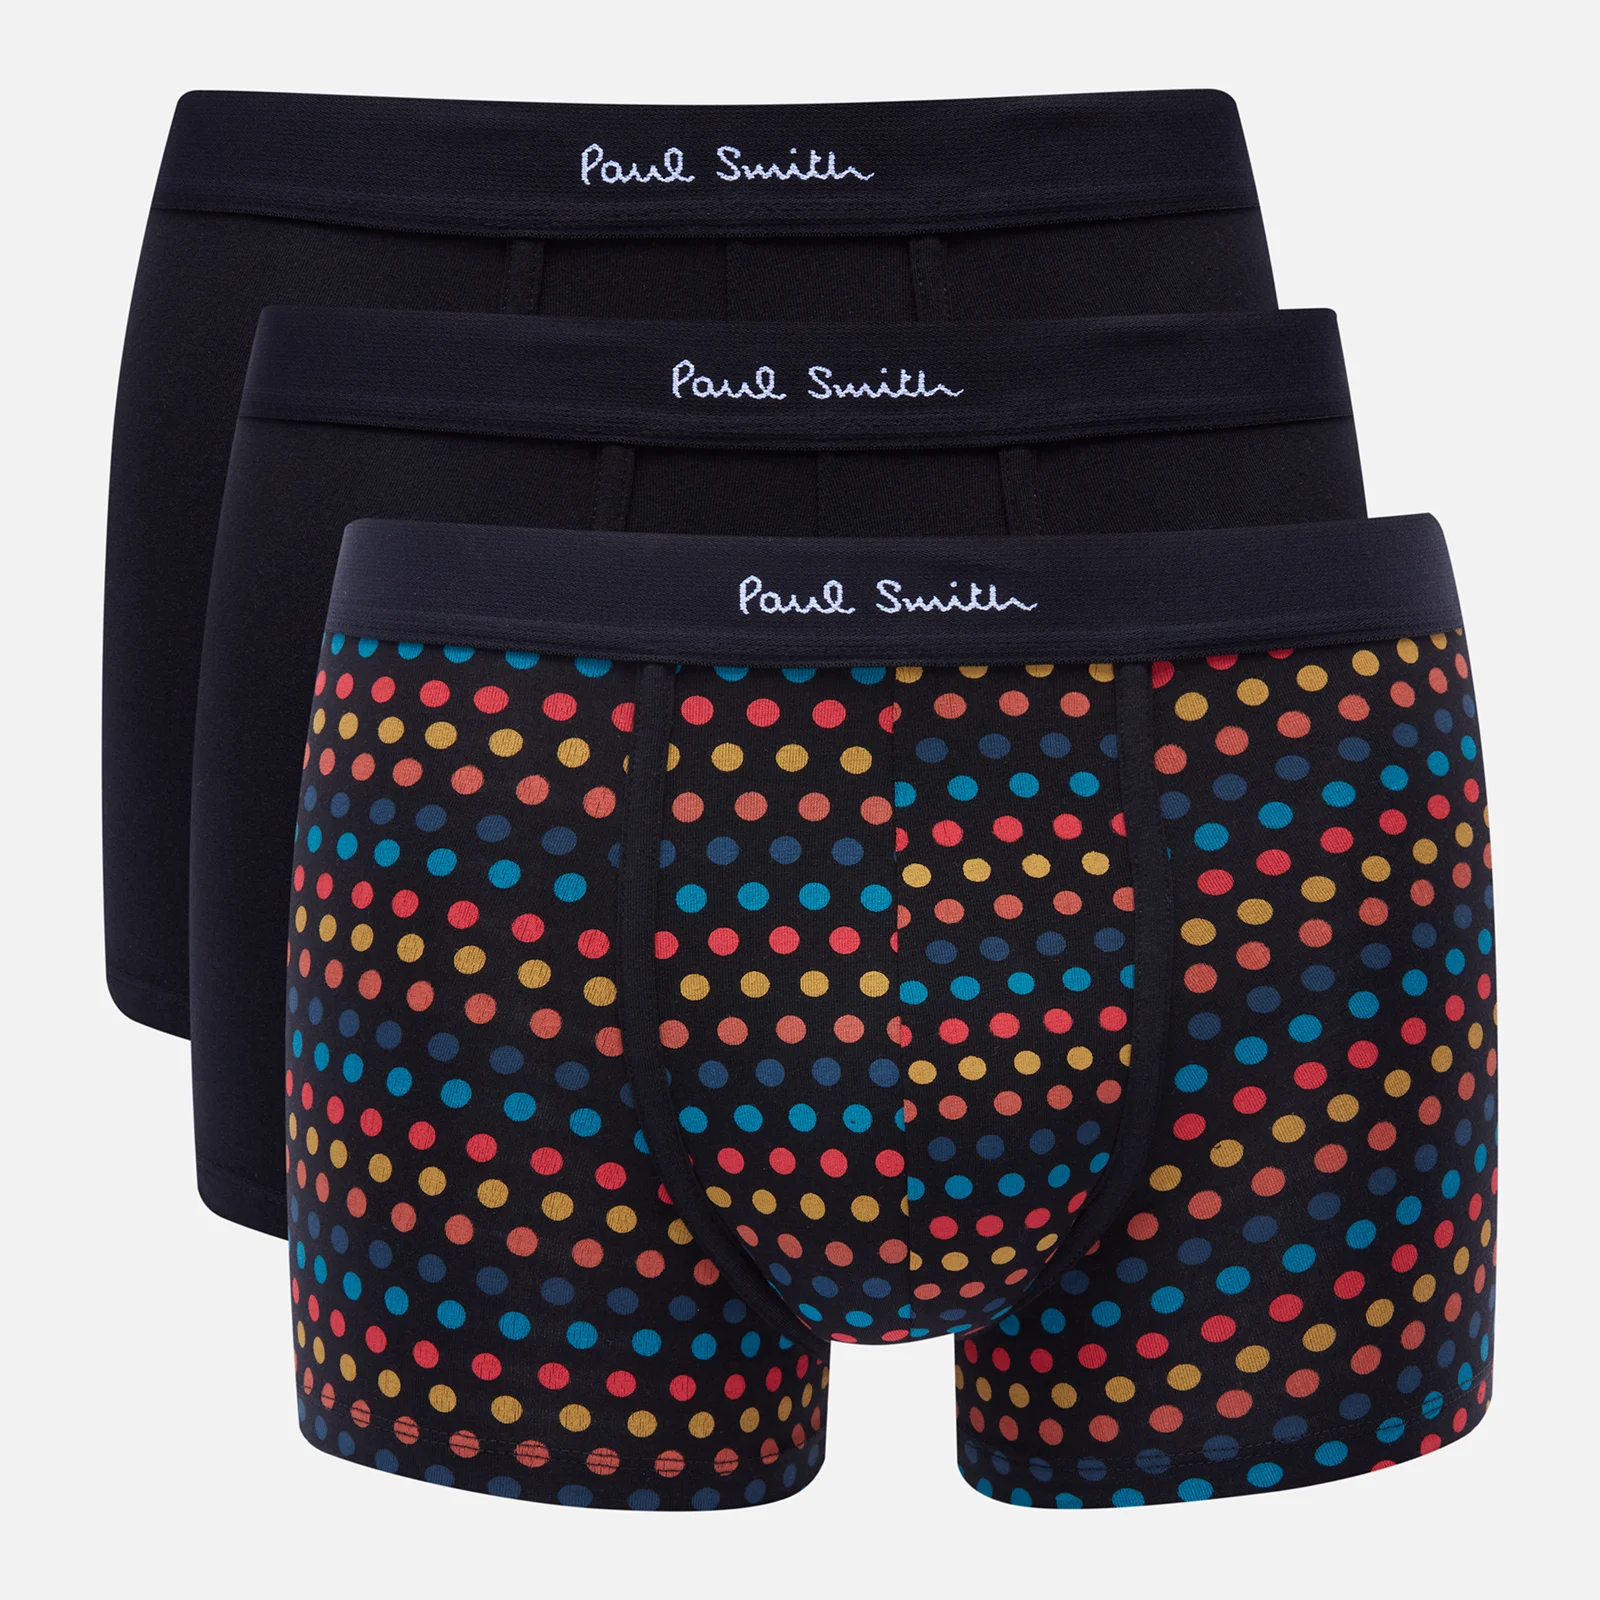 PS Paul Smith Men's 3-Pack Trunks - Black/Multi Image 1